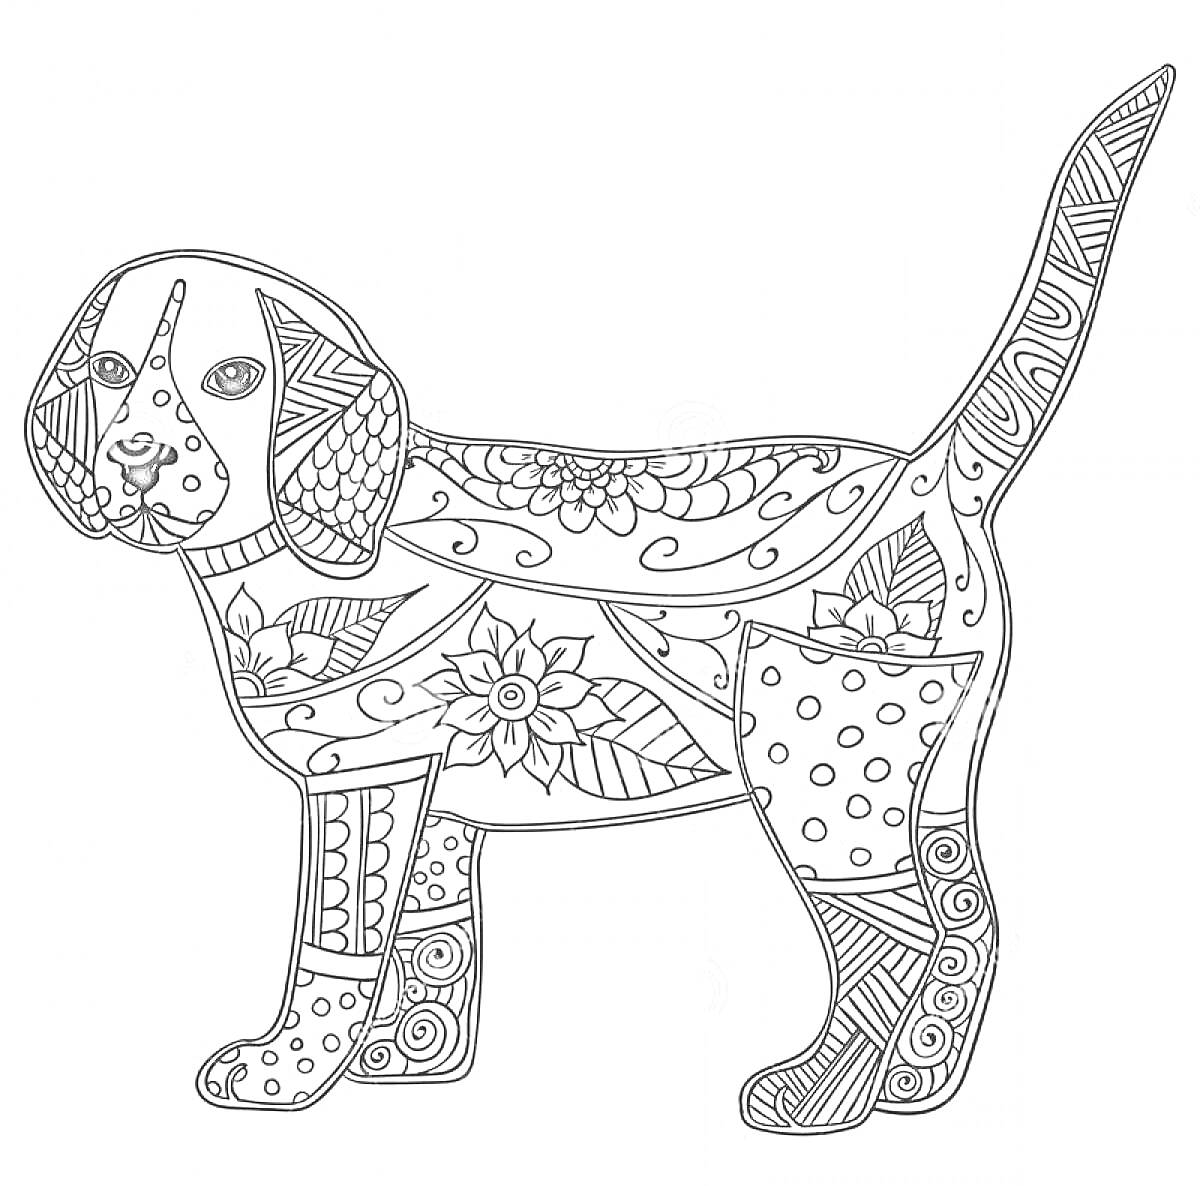 Раскраска Раскраска антистресс с изображением собаки, украшенной цветочными и геометрическими узорами